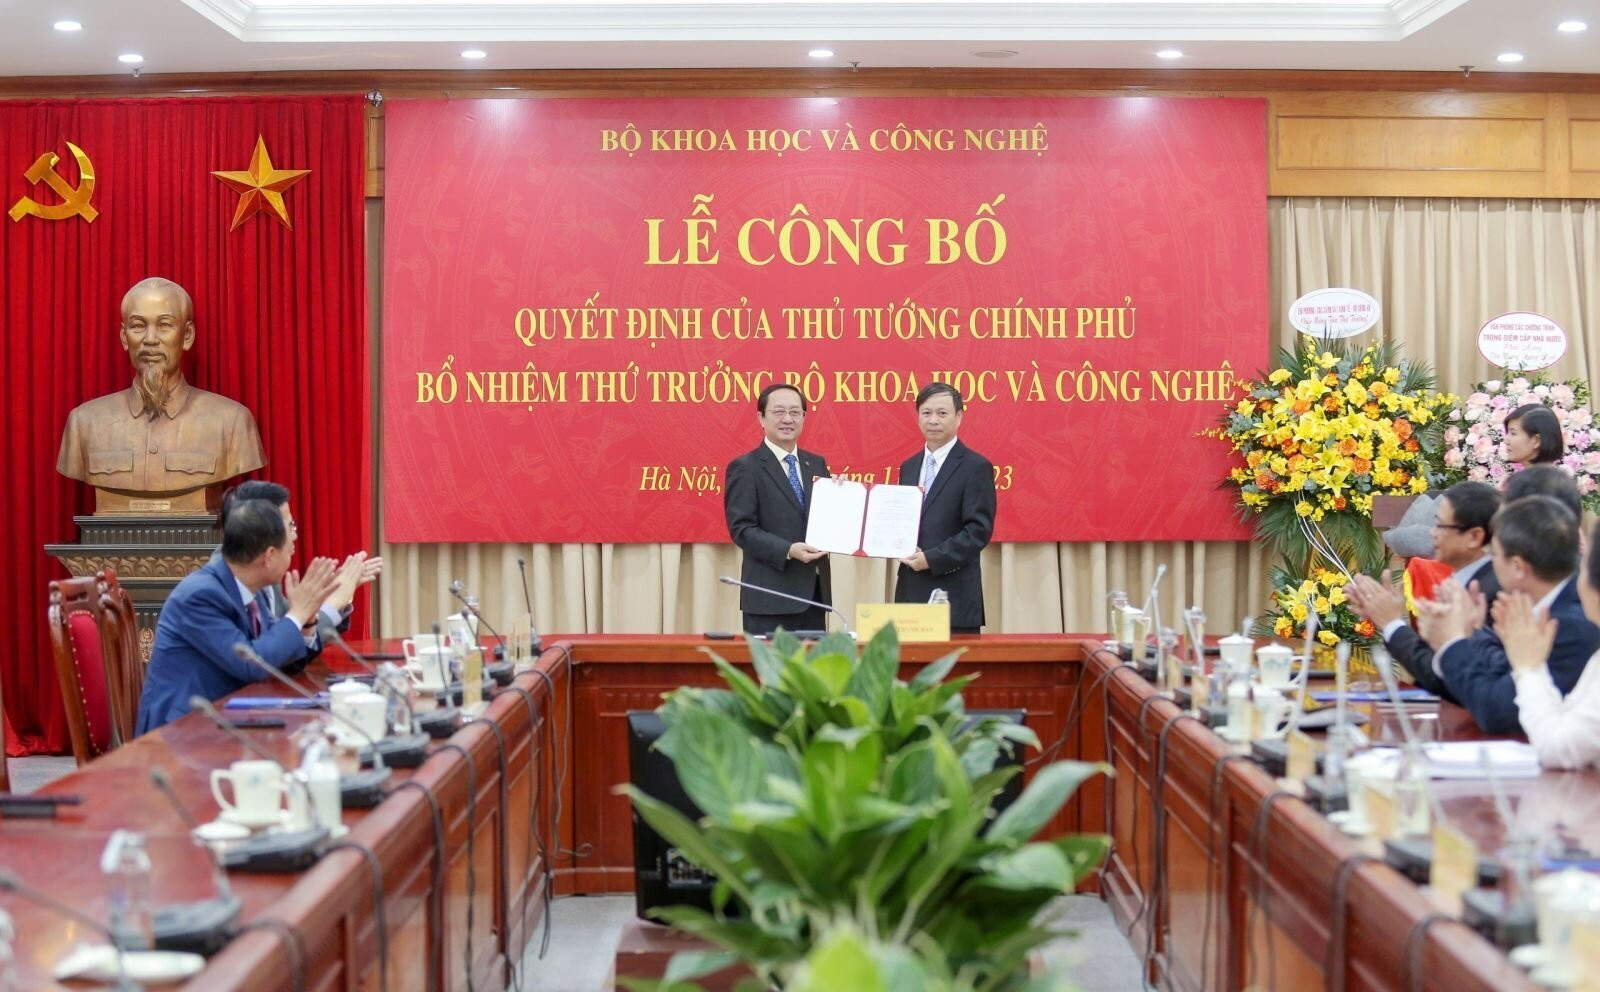 Thừa ủy quyền của Thủ tướng, Bộ trưởng Khoa học và Công nghệ Huỳnh Thành Đạt trao quyết định bổ nhiệm cho ông Hoàng Minh. (Ảnh: Bộ Khoa học và Công nghệ).